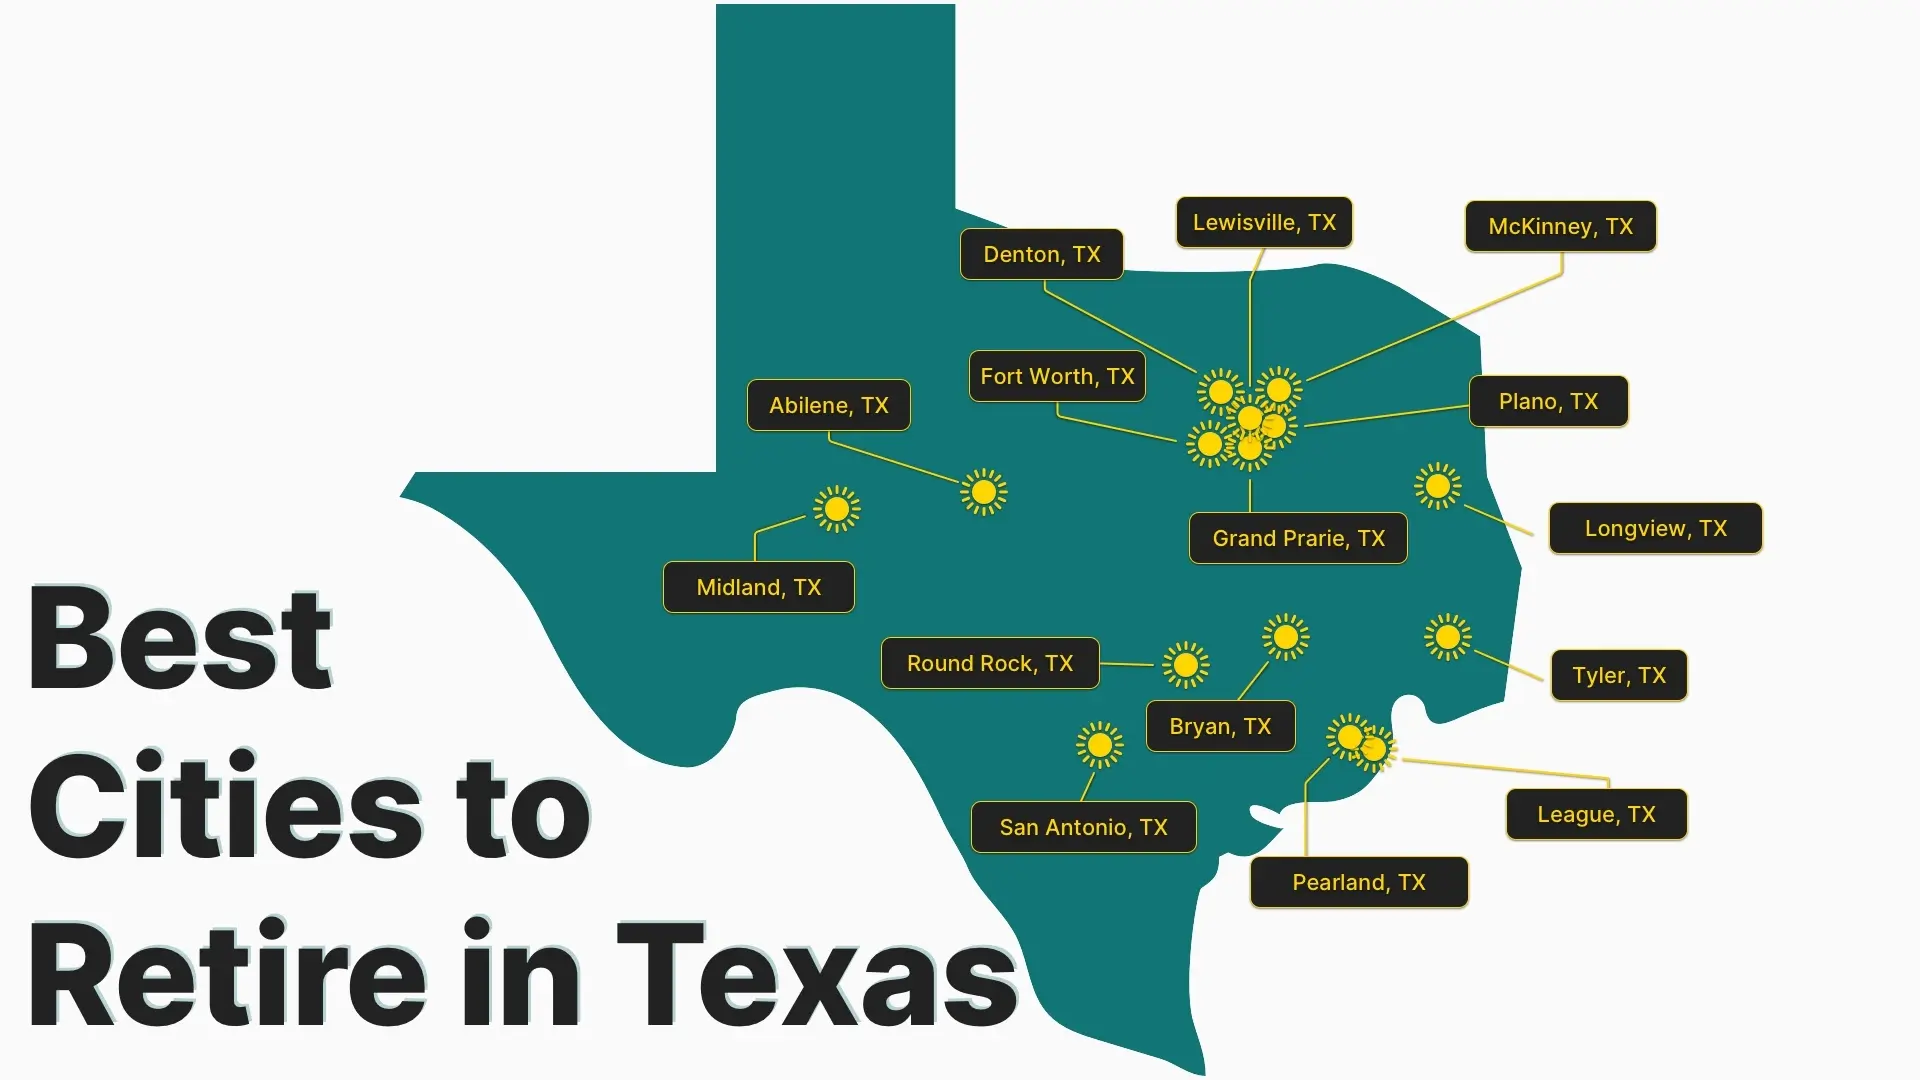 Best Cities to Retire in Texas